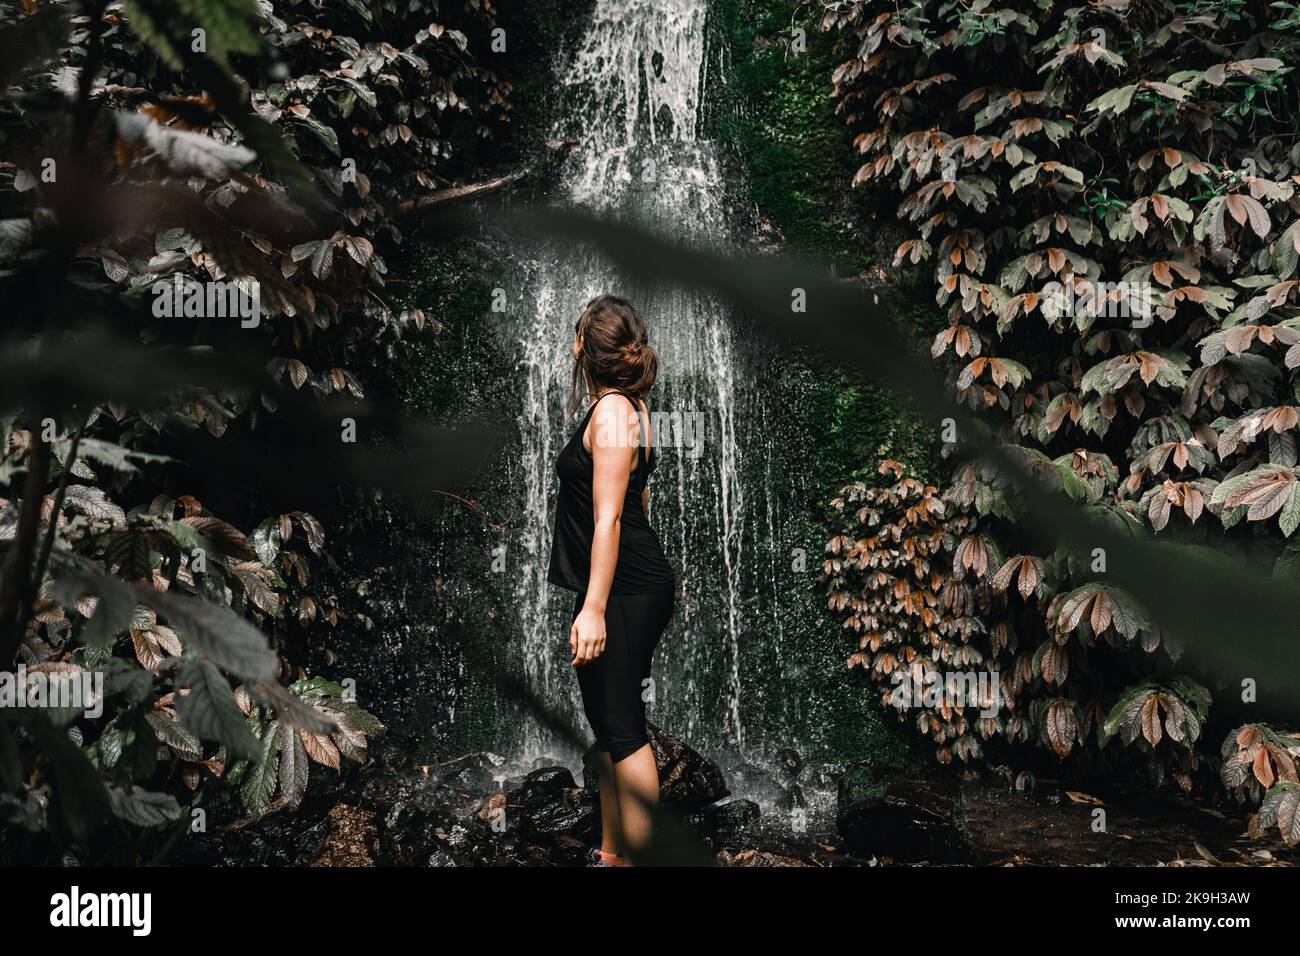 kaukasisches Mädchen mit gesammeltem braunen Haar in schwarzer Kleidung, das den Wasserfall zwischen Bäumen und Waldvegetation betrachtet Stockfoto